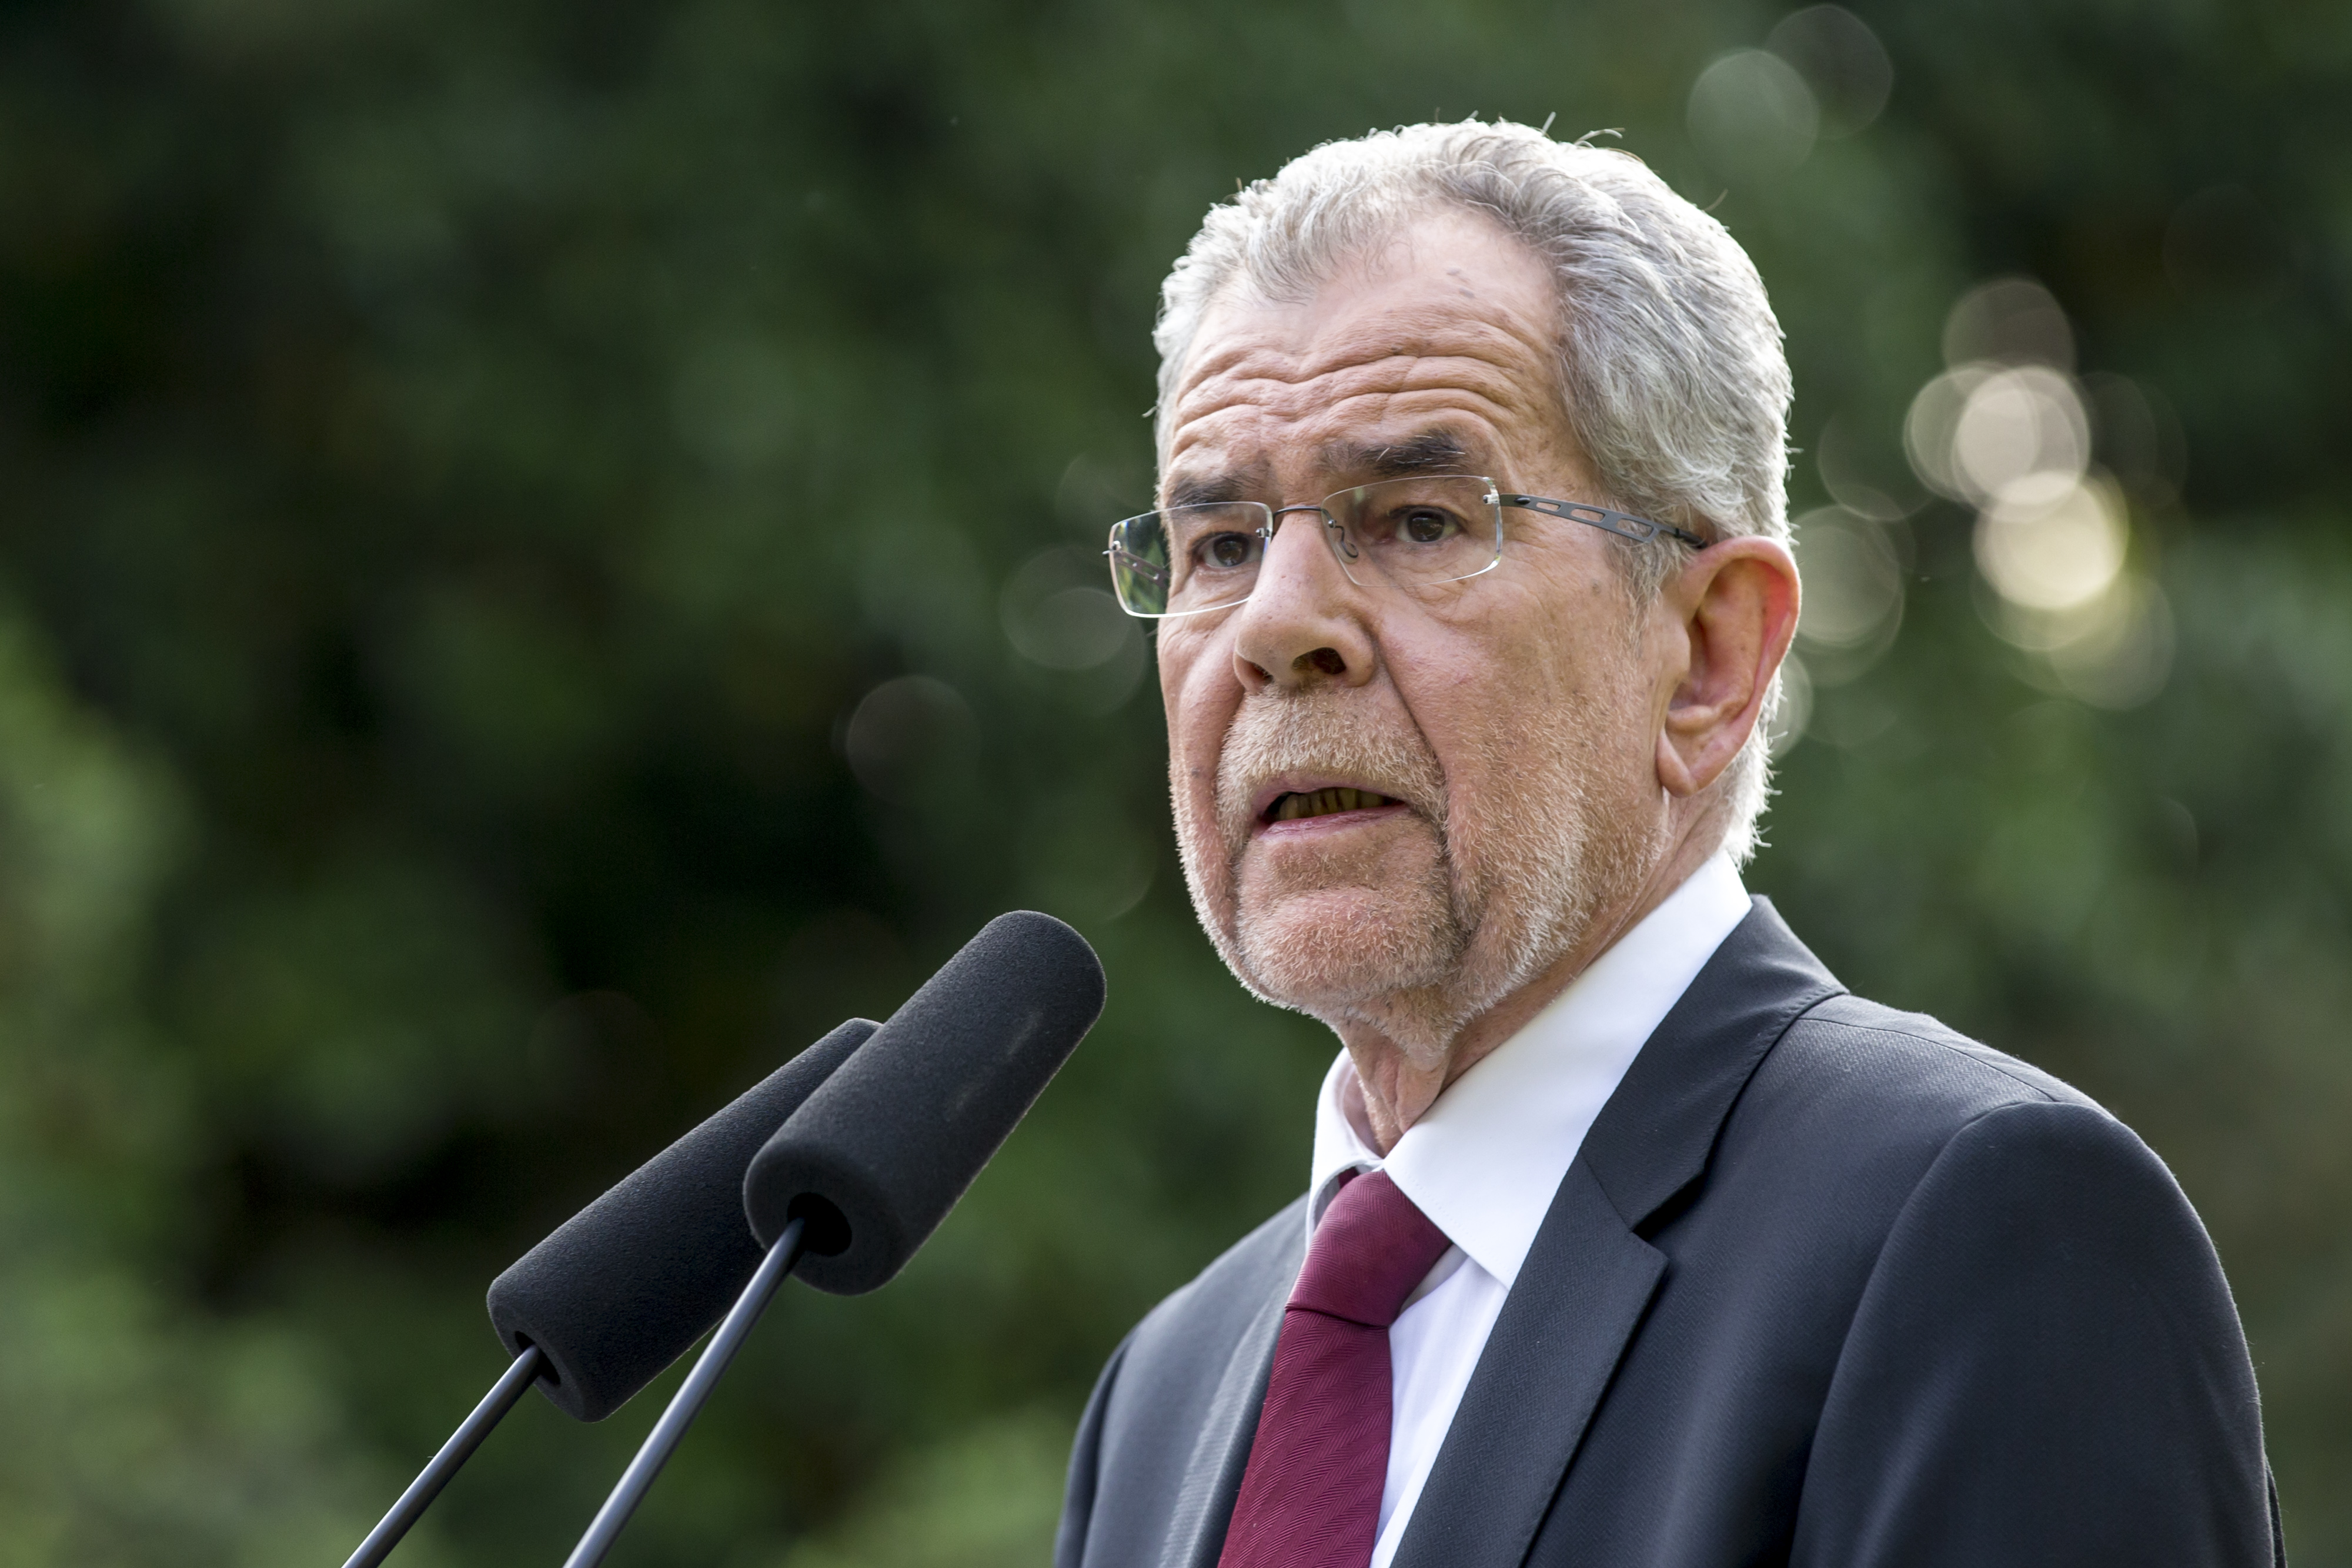 Österreich: Van der Bellen strebt Wiederwahl an – Gegenkandidatin aus FPÖ wahrscheinlich